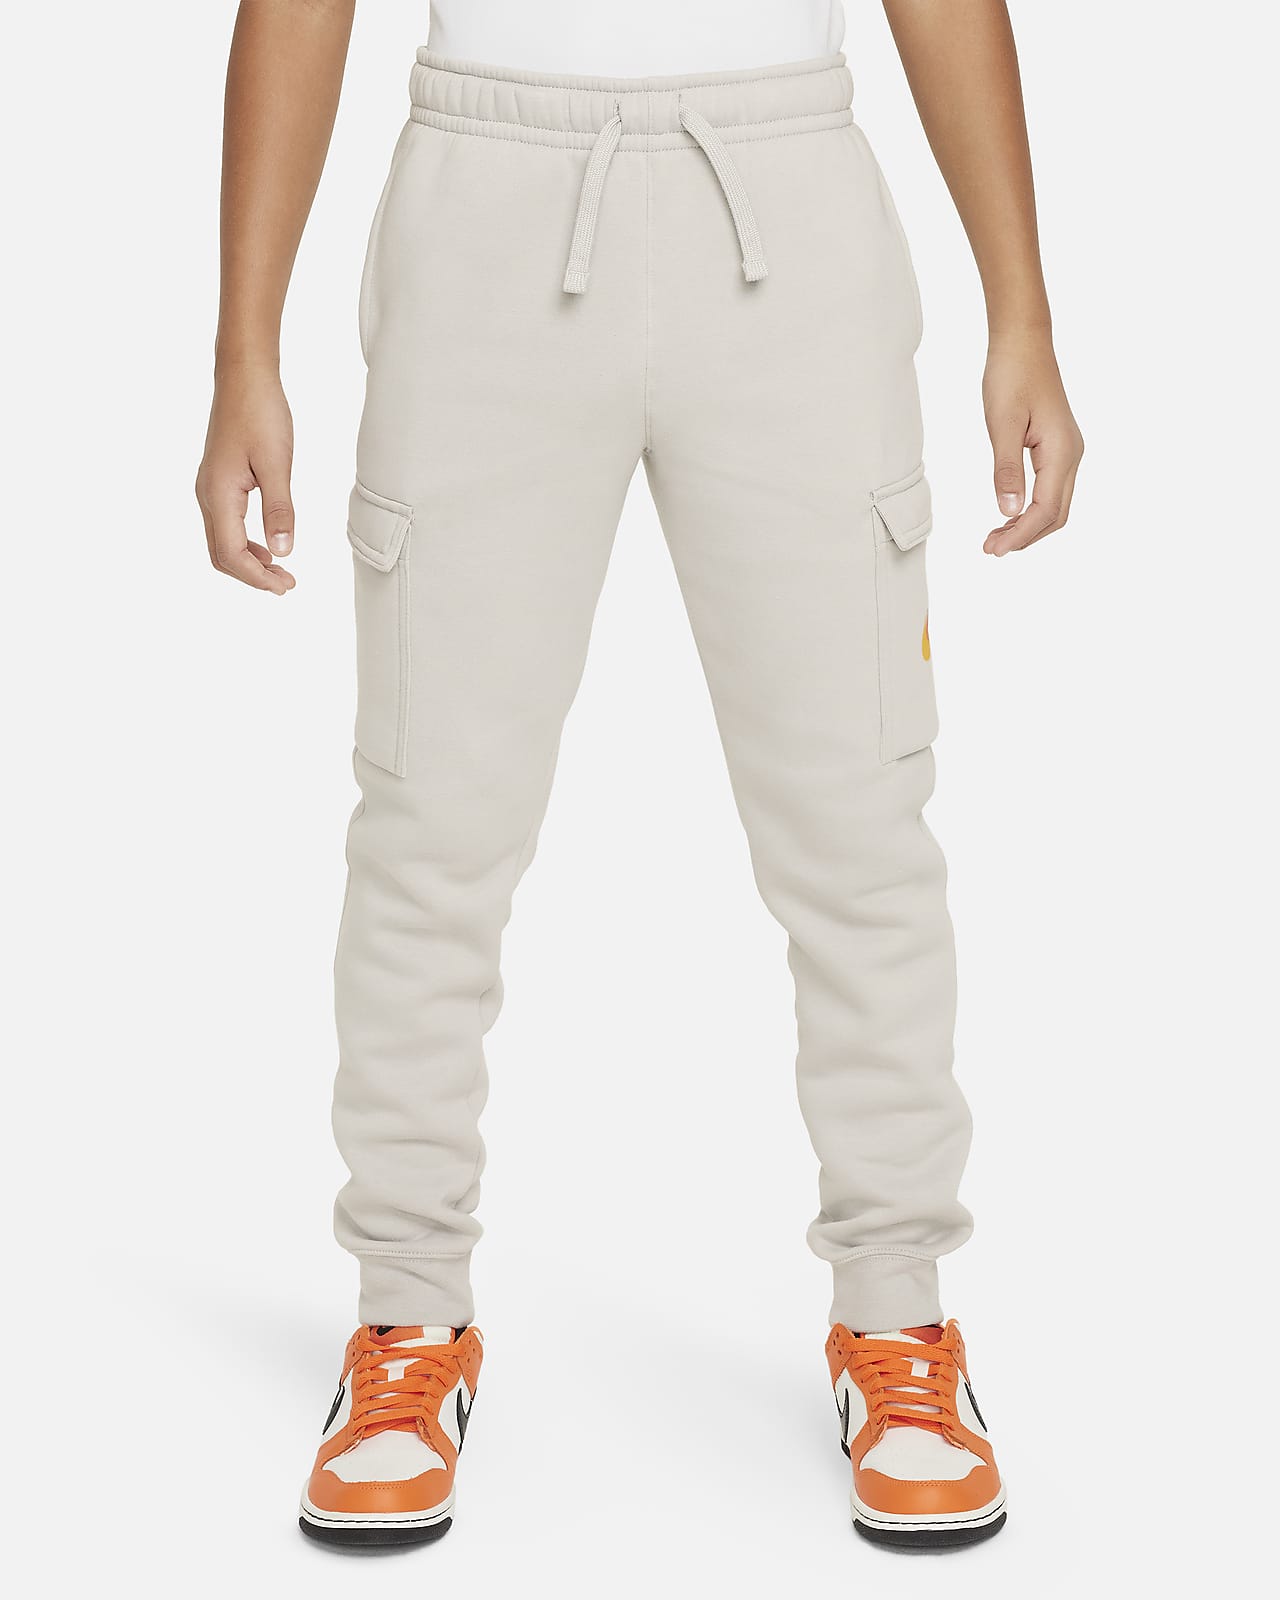 Nike Sportswear Older Kids' (Boys') Fleece Graphic Cargo Trousers